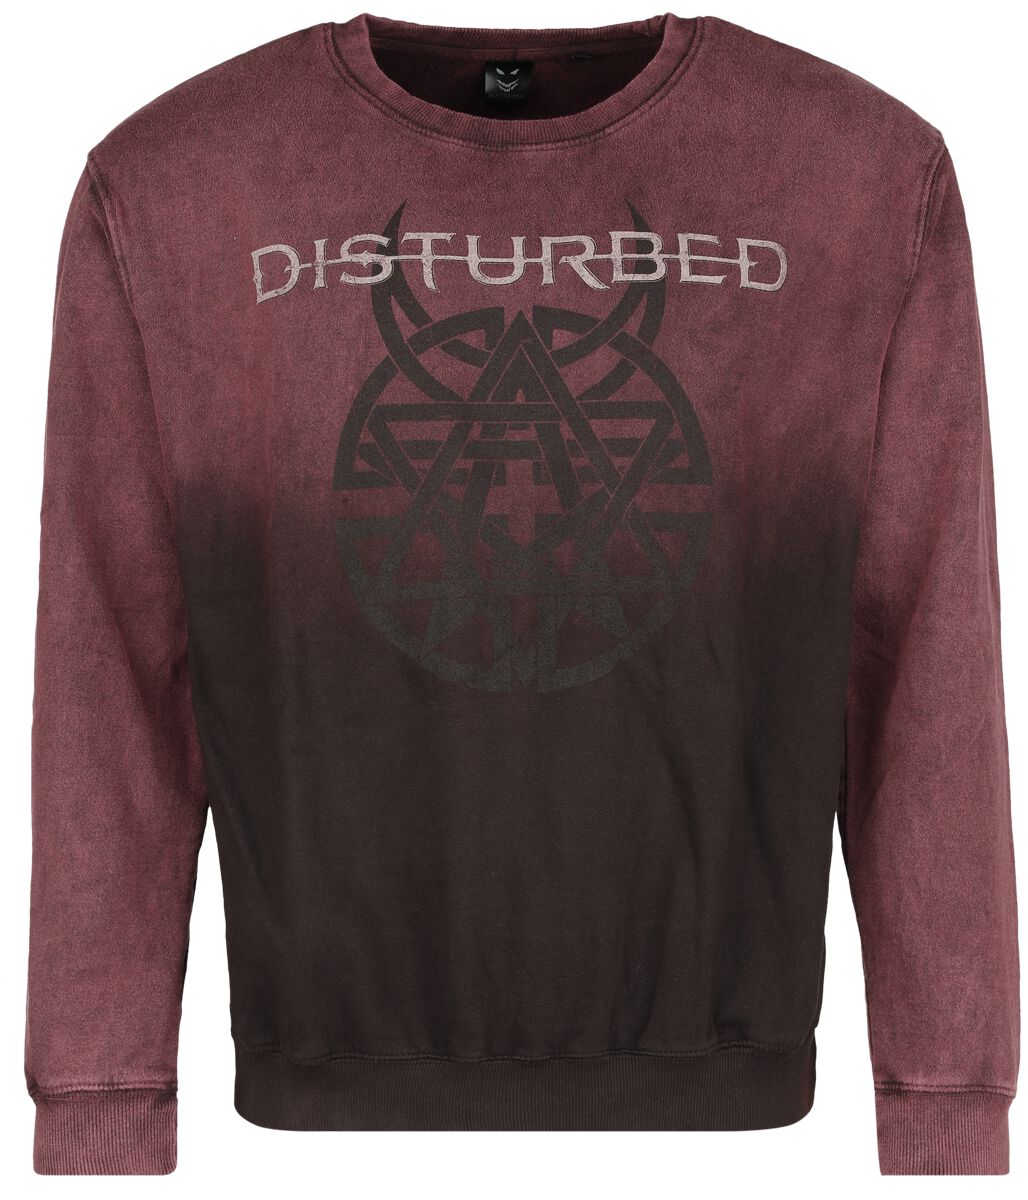 Disturbed Sweatshirt - Believe Symbol - S bis XXL - für Männer - Größe M - dunkelrot  - Lizenziertes Merchandise!